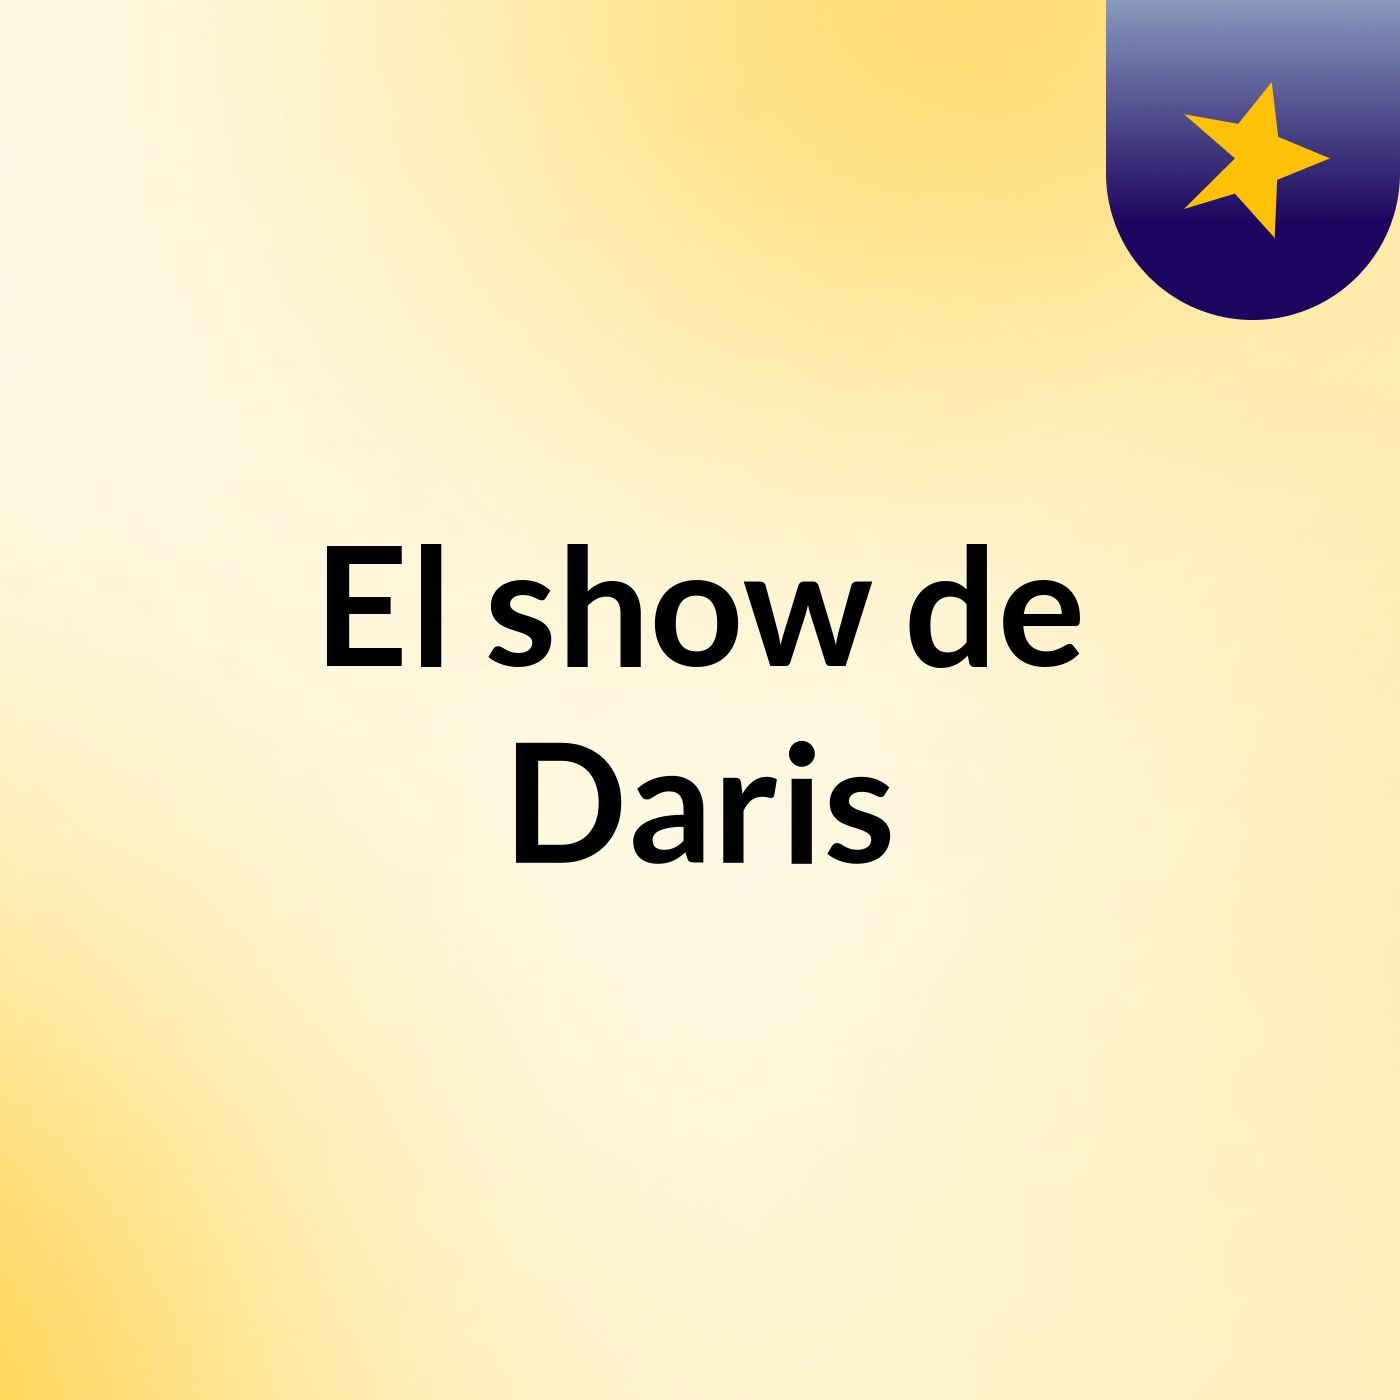 El show de Daris